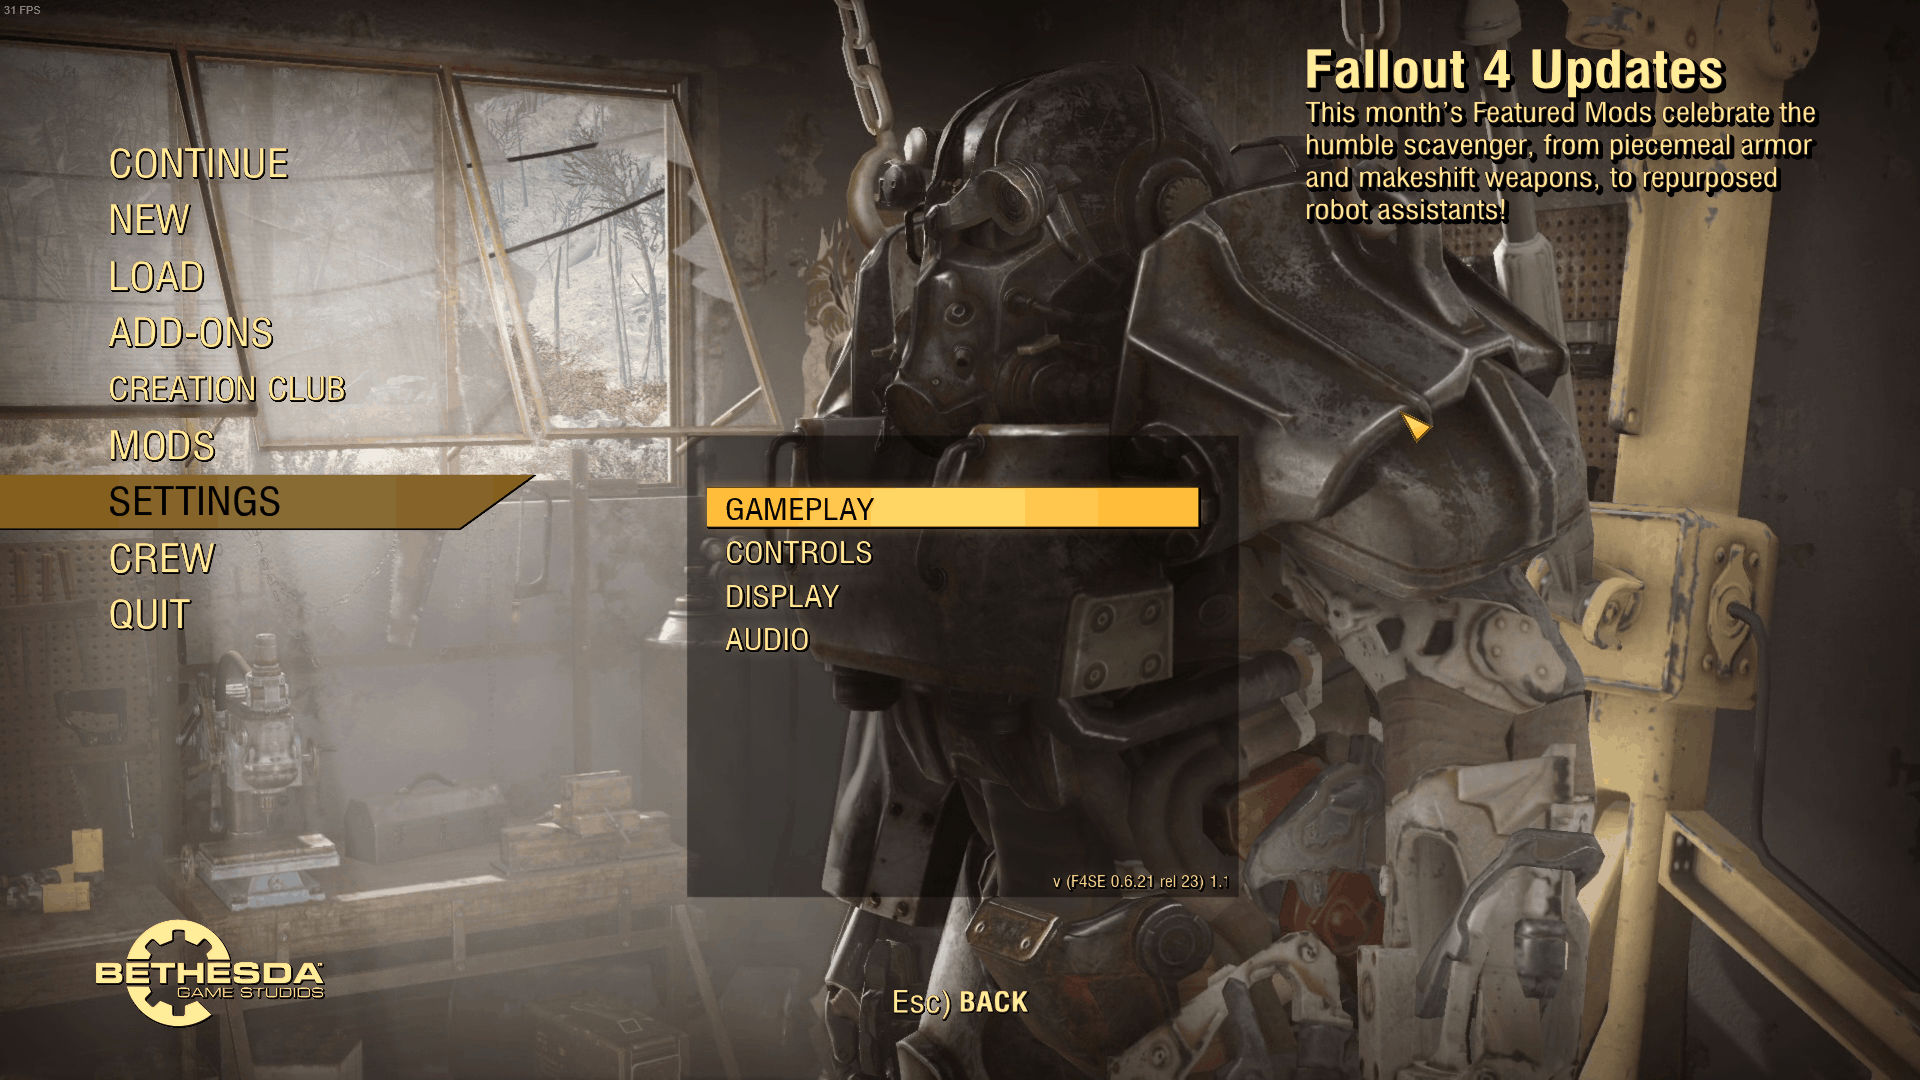 F76 Styled Main Menu (Fallout 76 menu) - Fallout 4 Mod Download